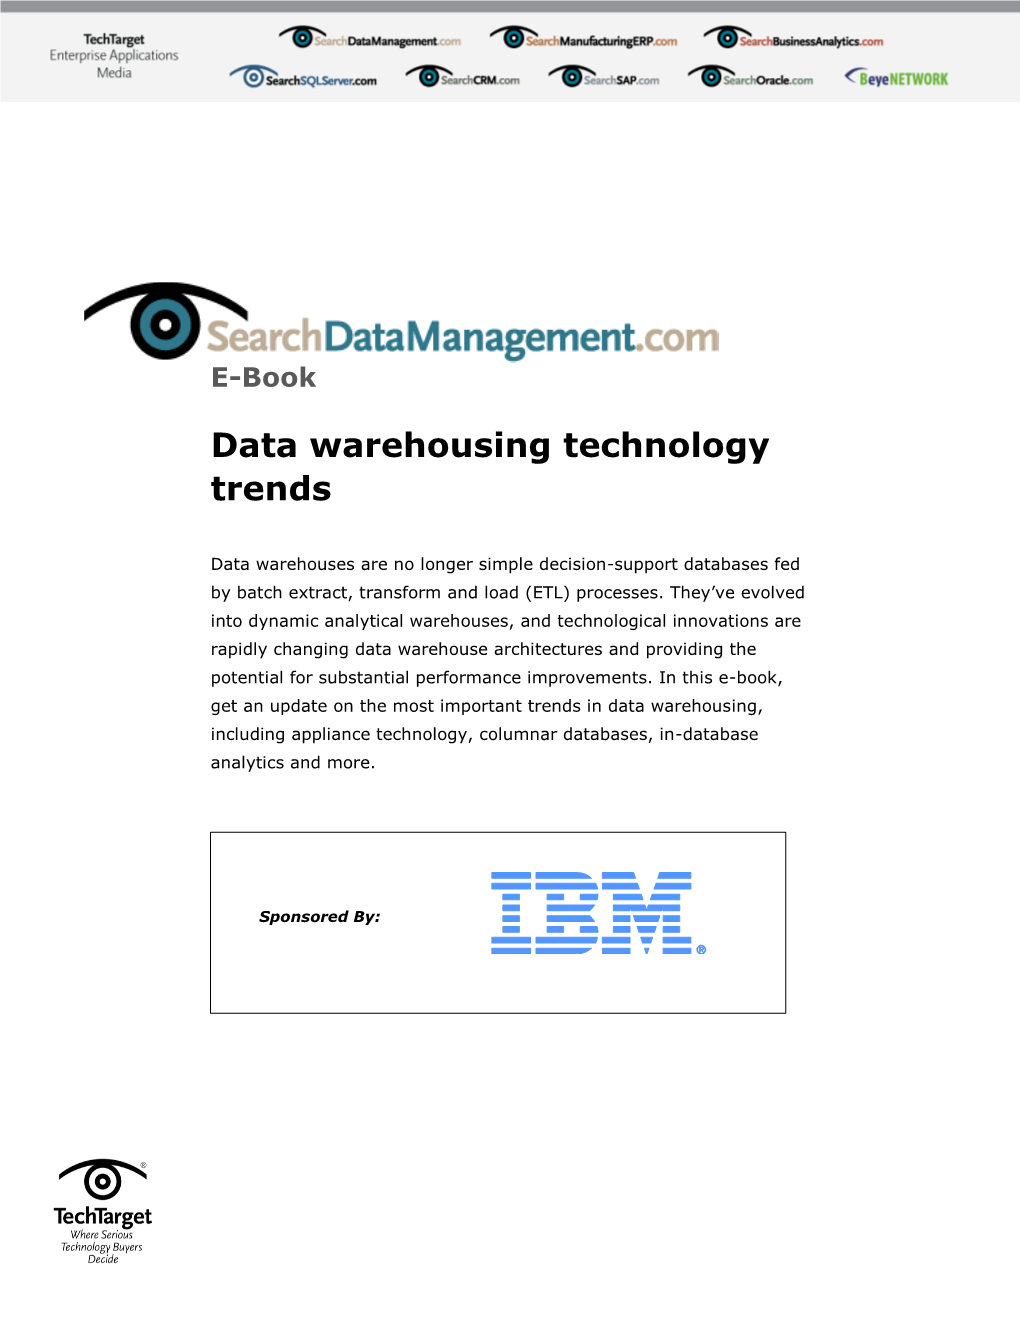 Data Warehousing Technology Trends